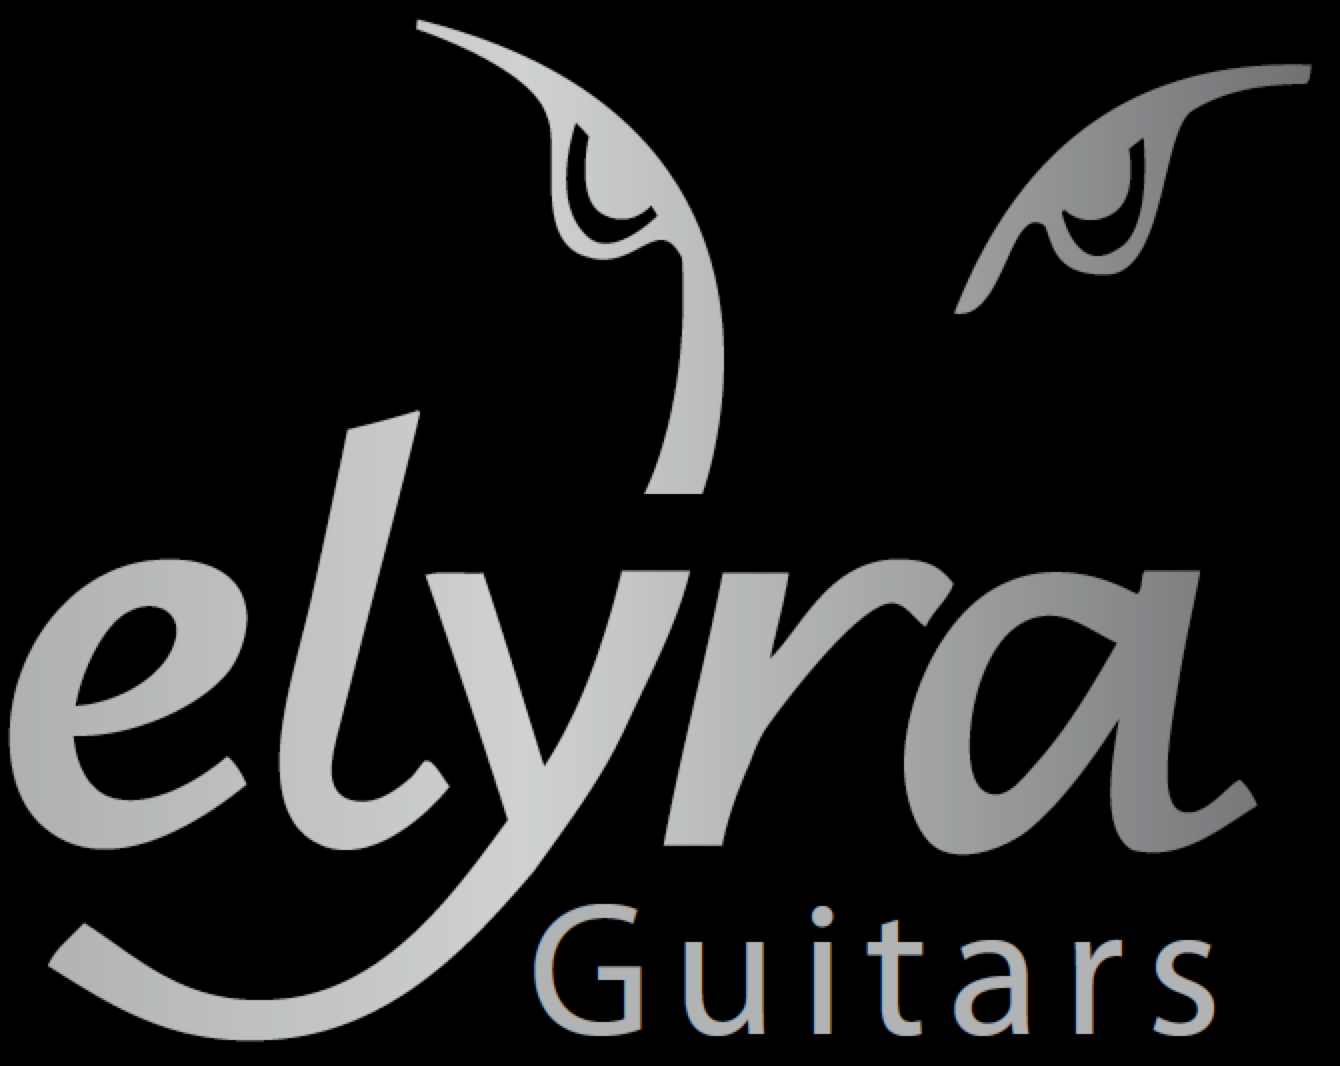 (c) Elyra-guitars.com